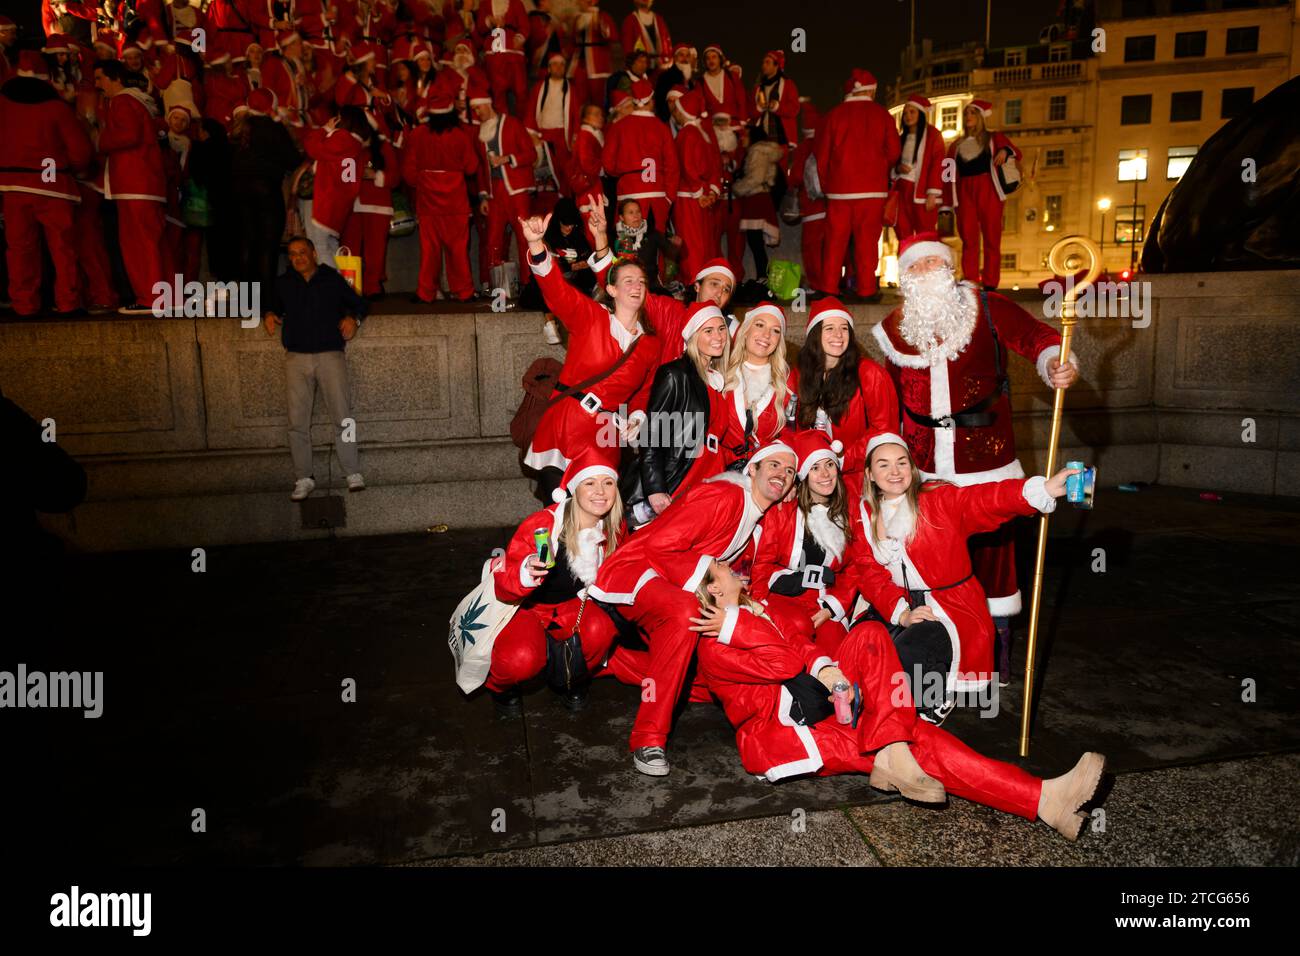 Die Leute nehmen an der SantaCon am Trafalgar Square Teil, bei der sie sich als Weihnachtsmann verkleiden und dann in die Stadt gehen, um Weihnachtsstimmung zu verbreiten. Die Stockfoto